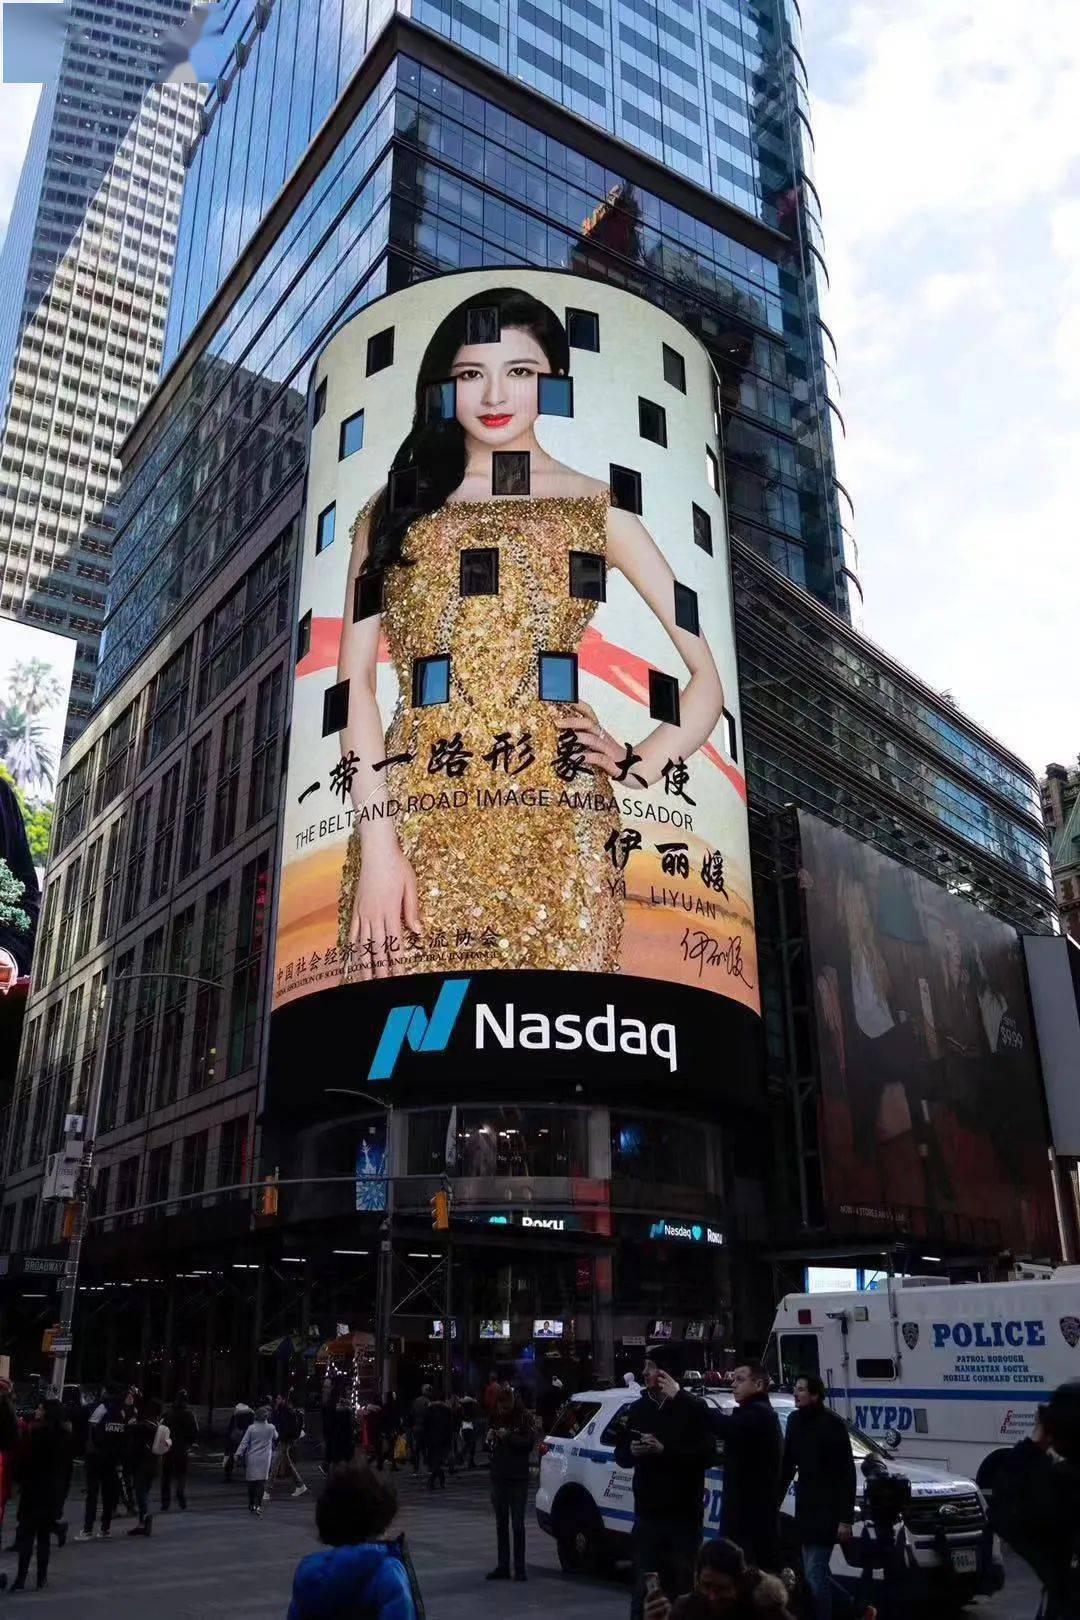 而在美国纽约时代广场的地标性建筑"纳斯达克大屏"上,也出现了伊丽媛